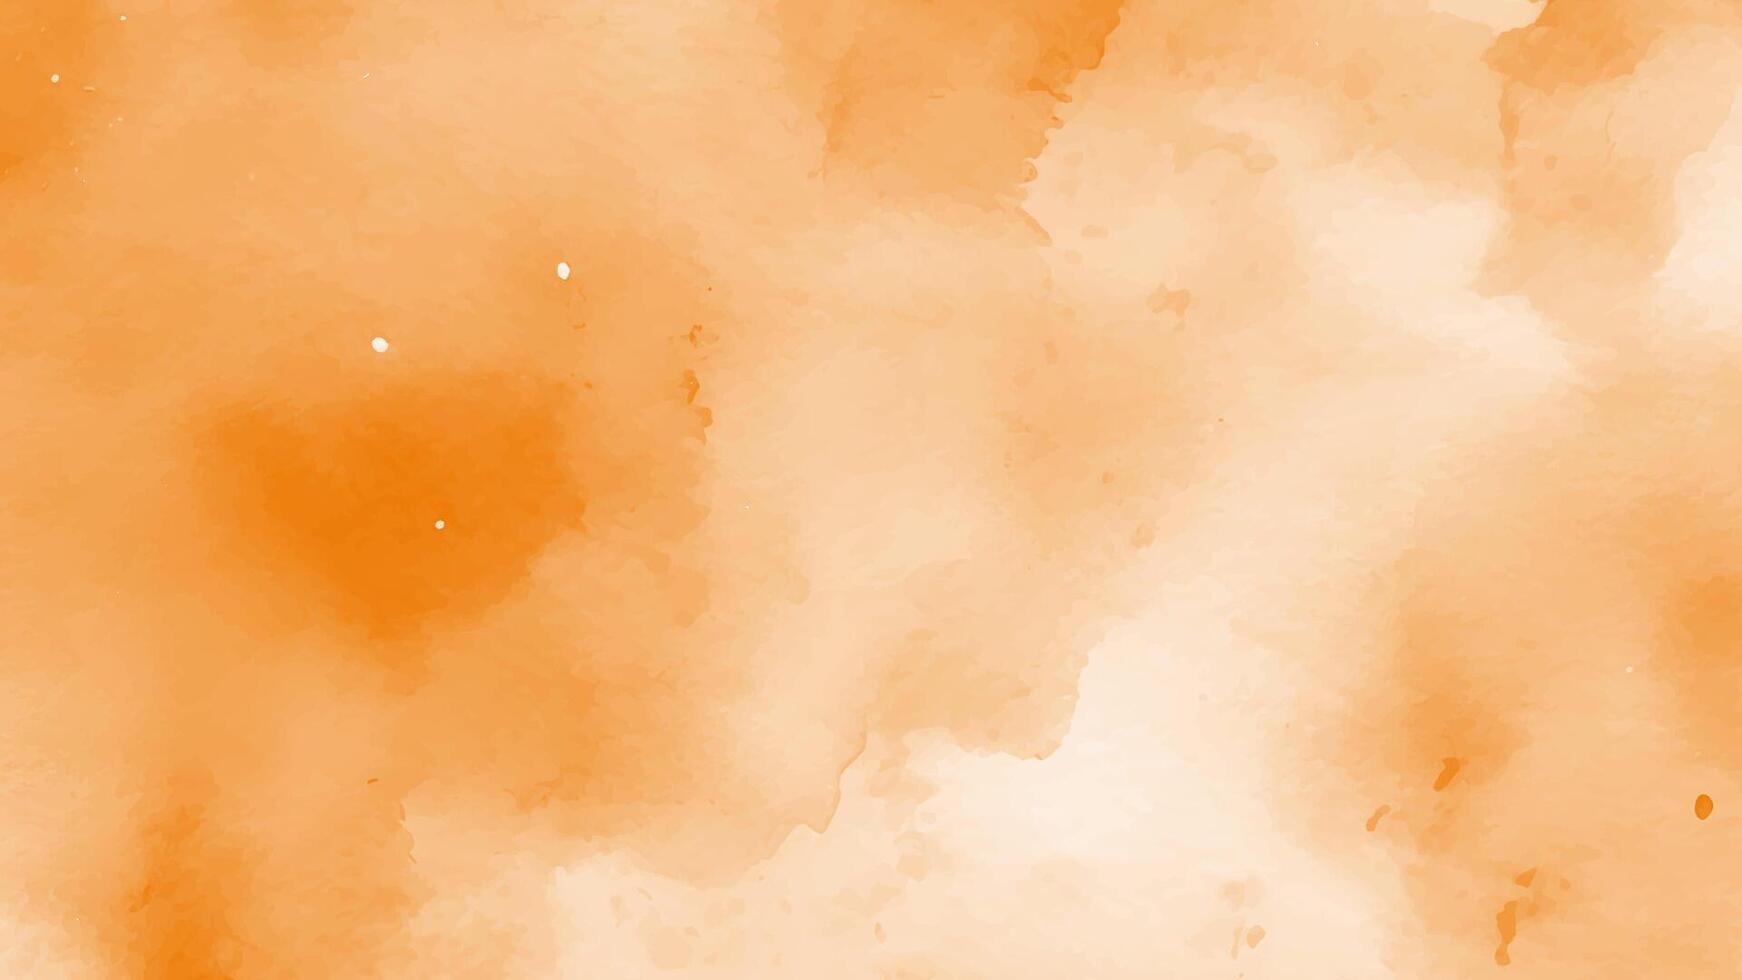 abstract oranje waterverf achtergrond. oranje water kleur plons structuur vector